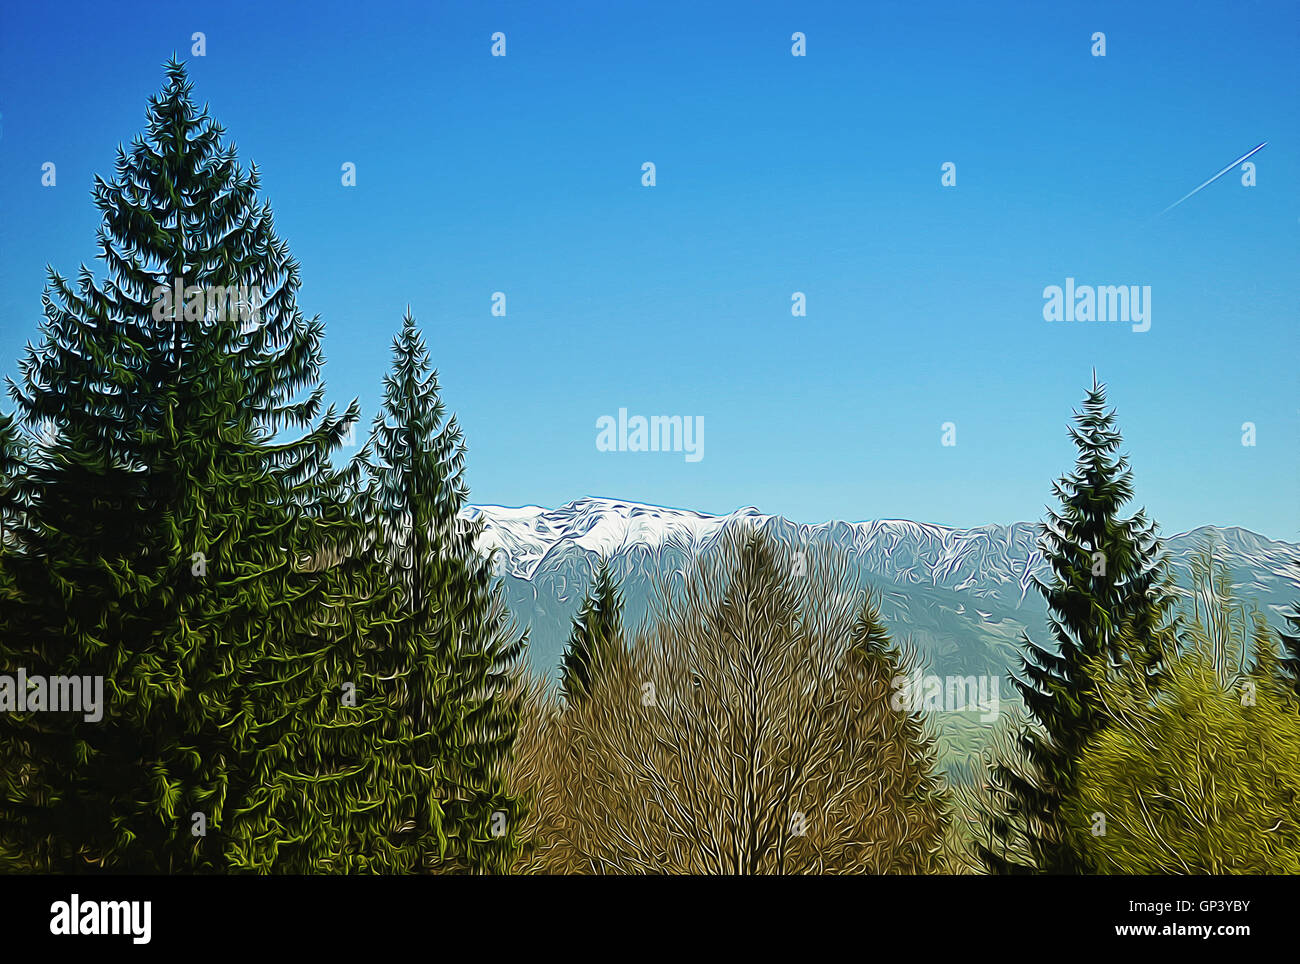 Illustration de belles montagnes paysage et ciel bleu. Voyage de printemps Banque D'Images